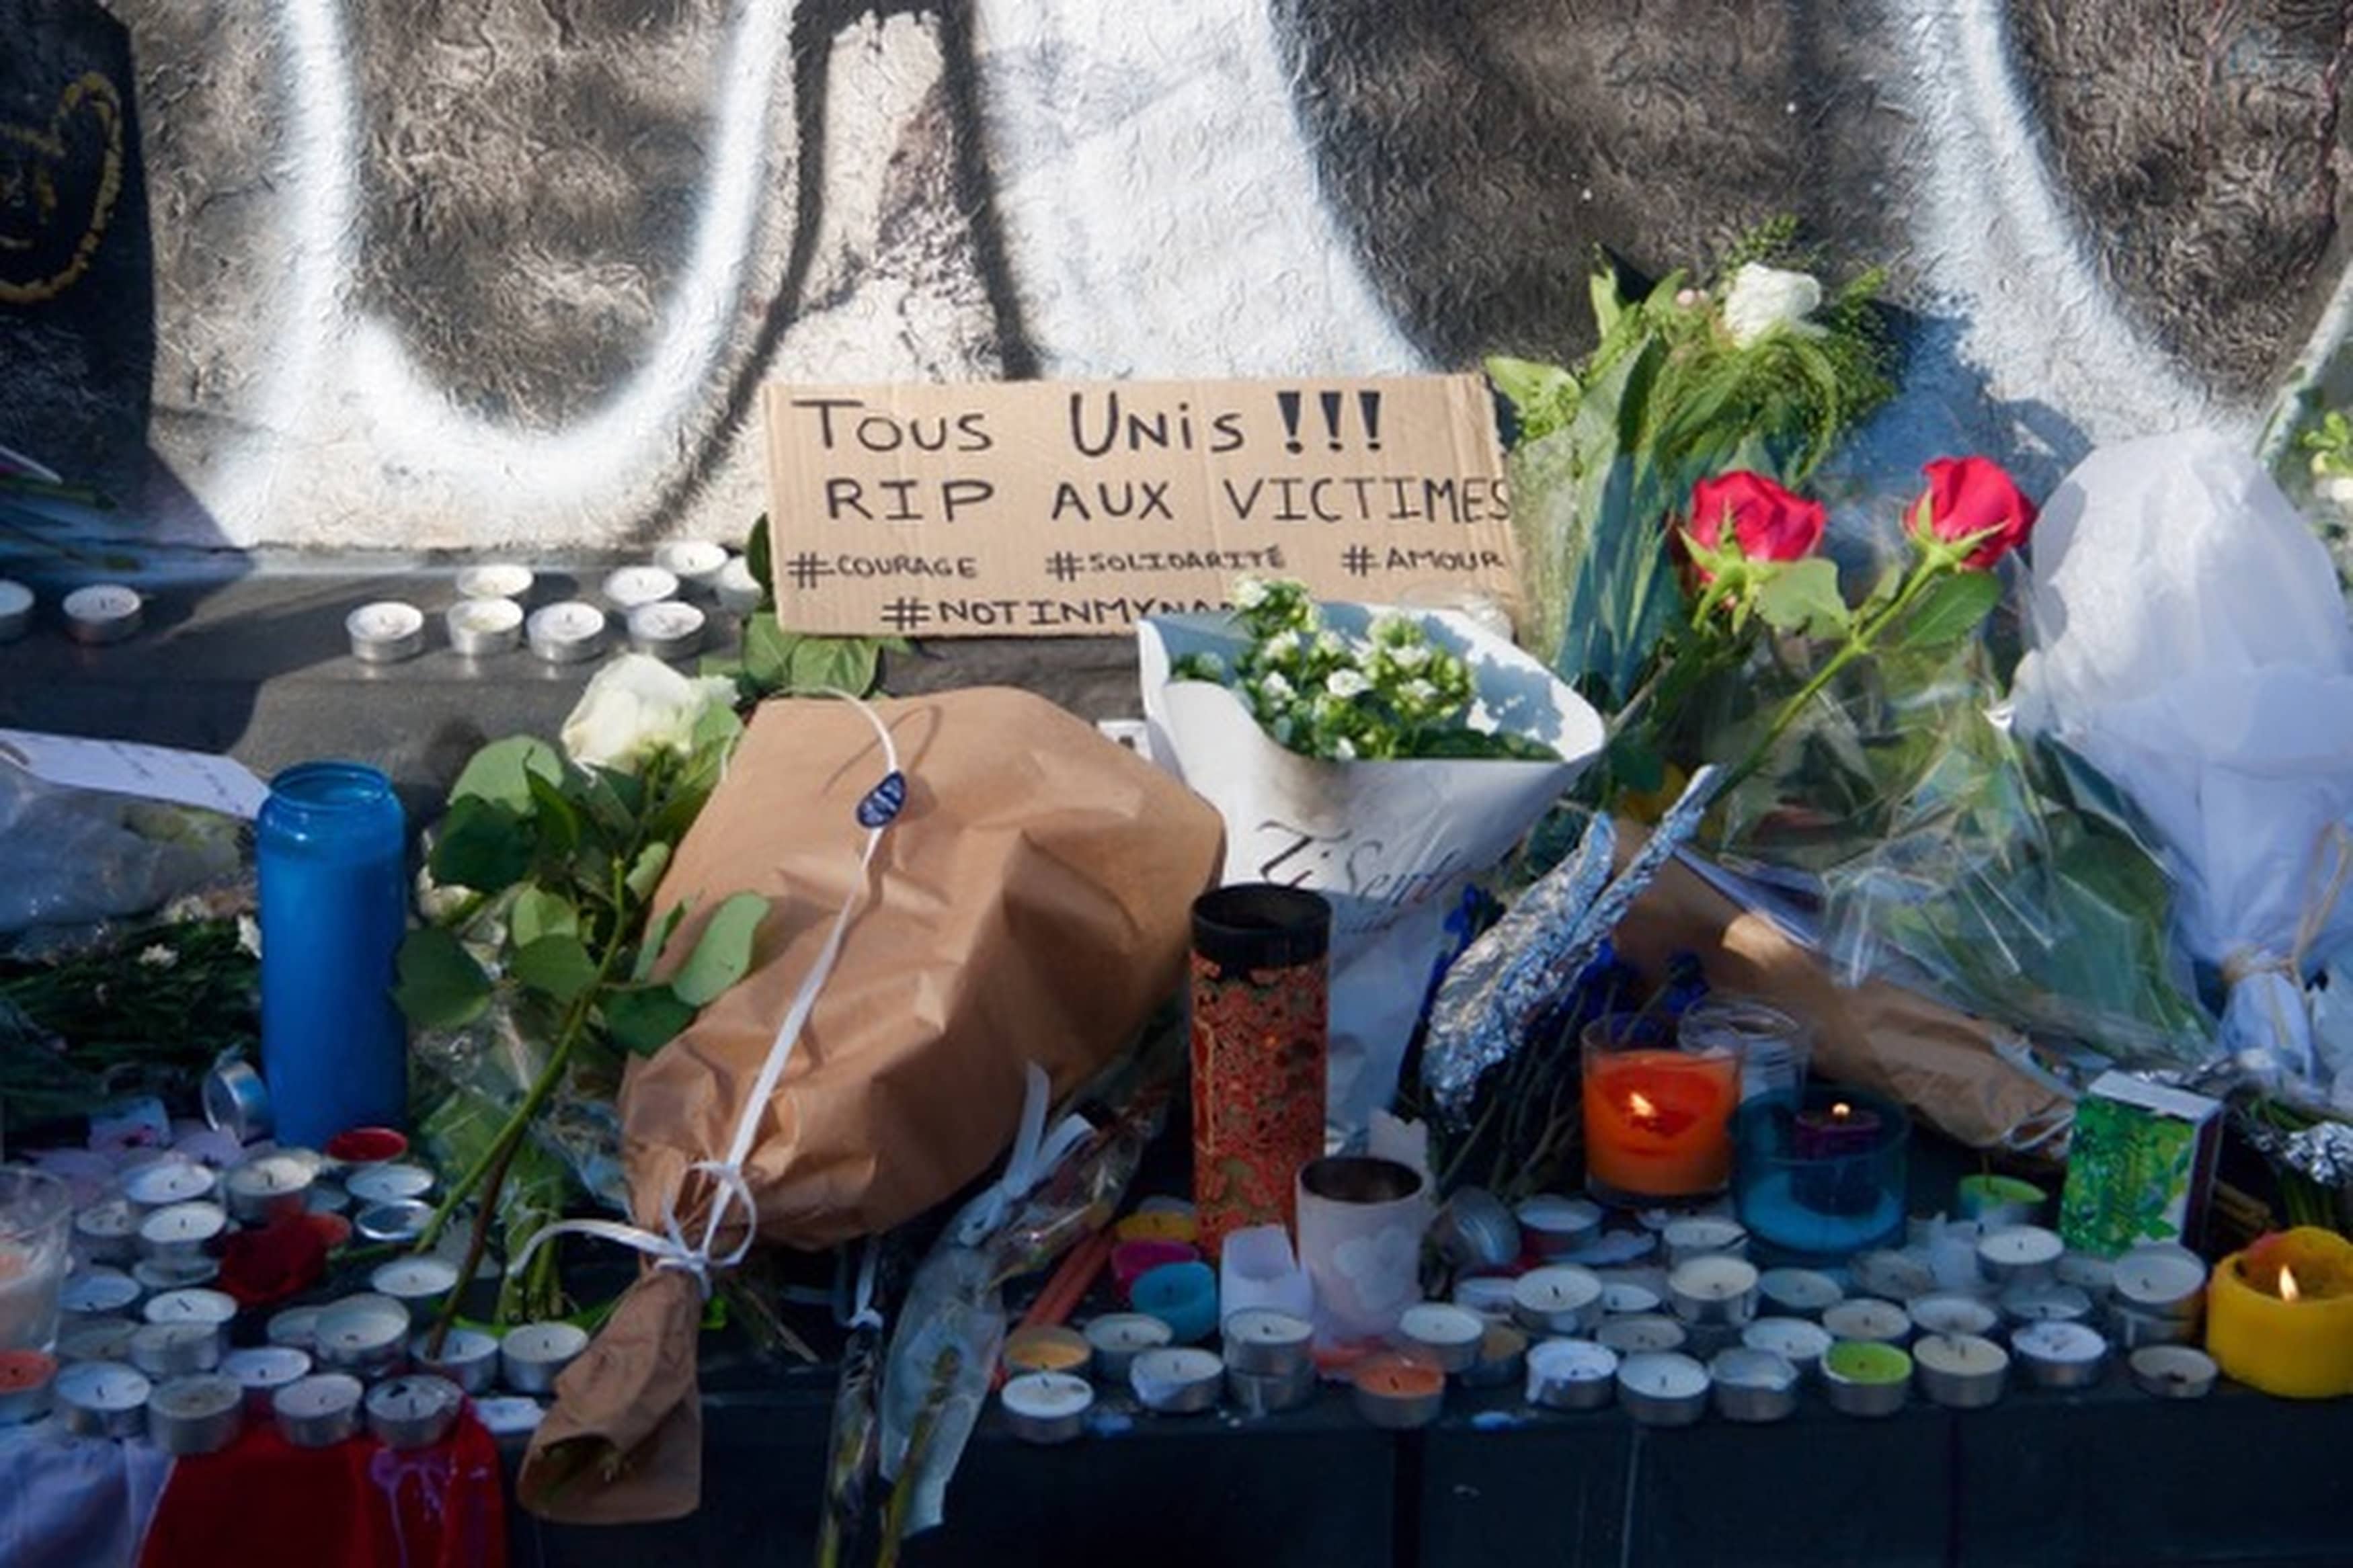 A memorial is seen at the Place de la Republique in Paris on 15 November. Photo: CNS/Lucie Brousseau